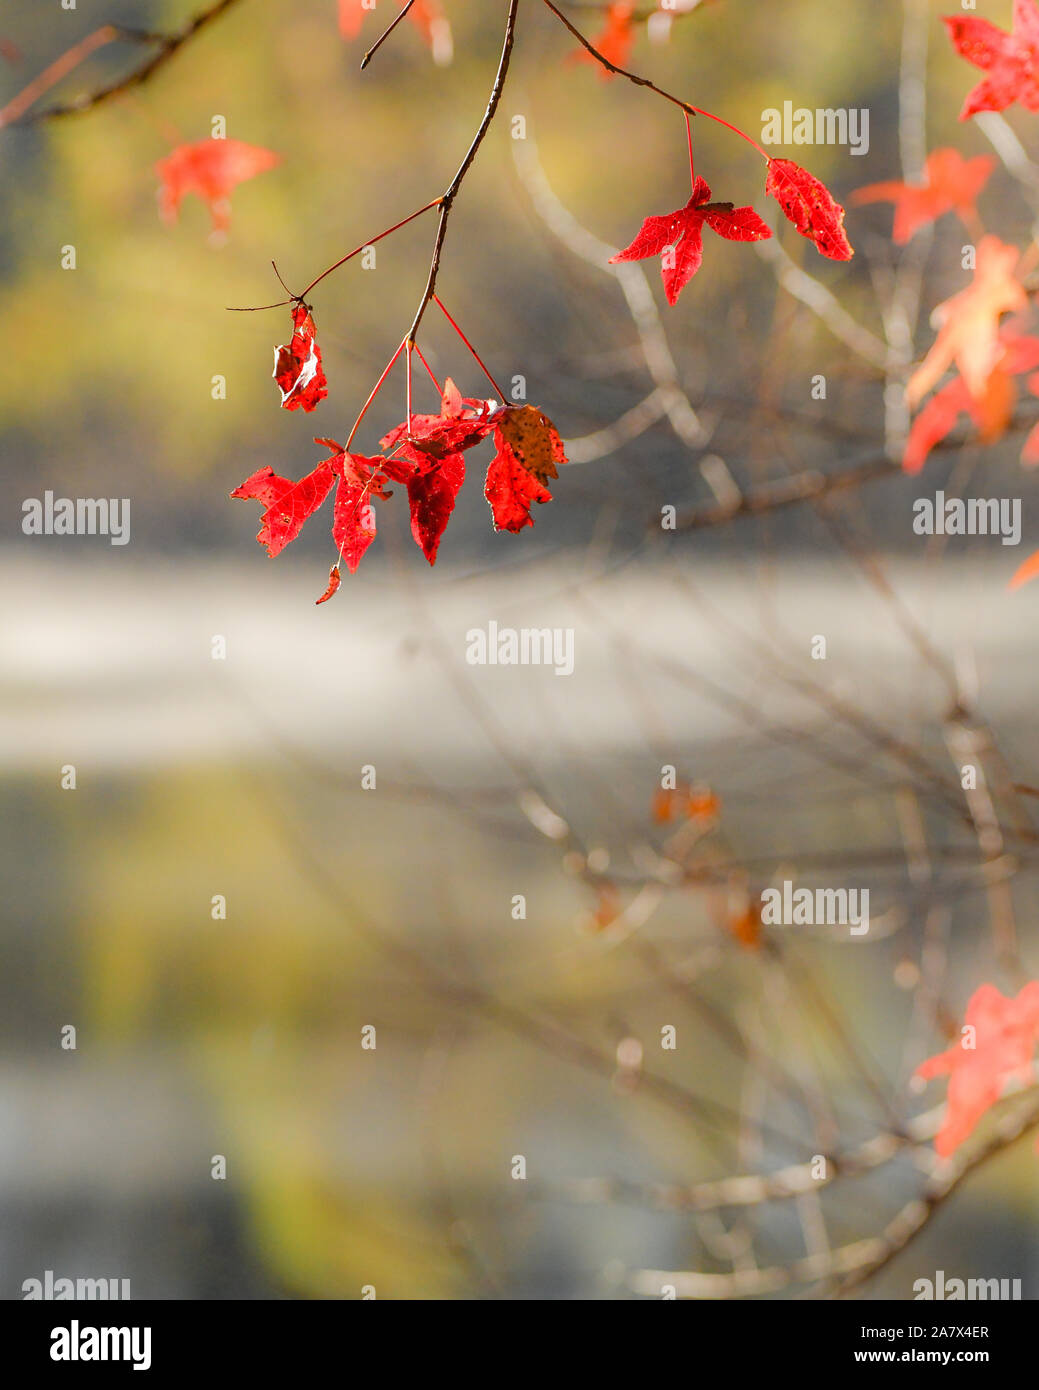 Herbstlaub im Wasser spiegelt - Herbstfarben - fallen Bäume sich - impressionismus - impressionistischen Fotografie - Dampf Nebel - misty Wasser Stockfoto